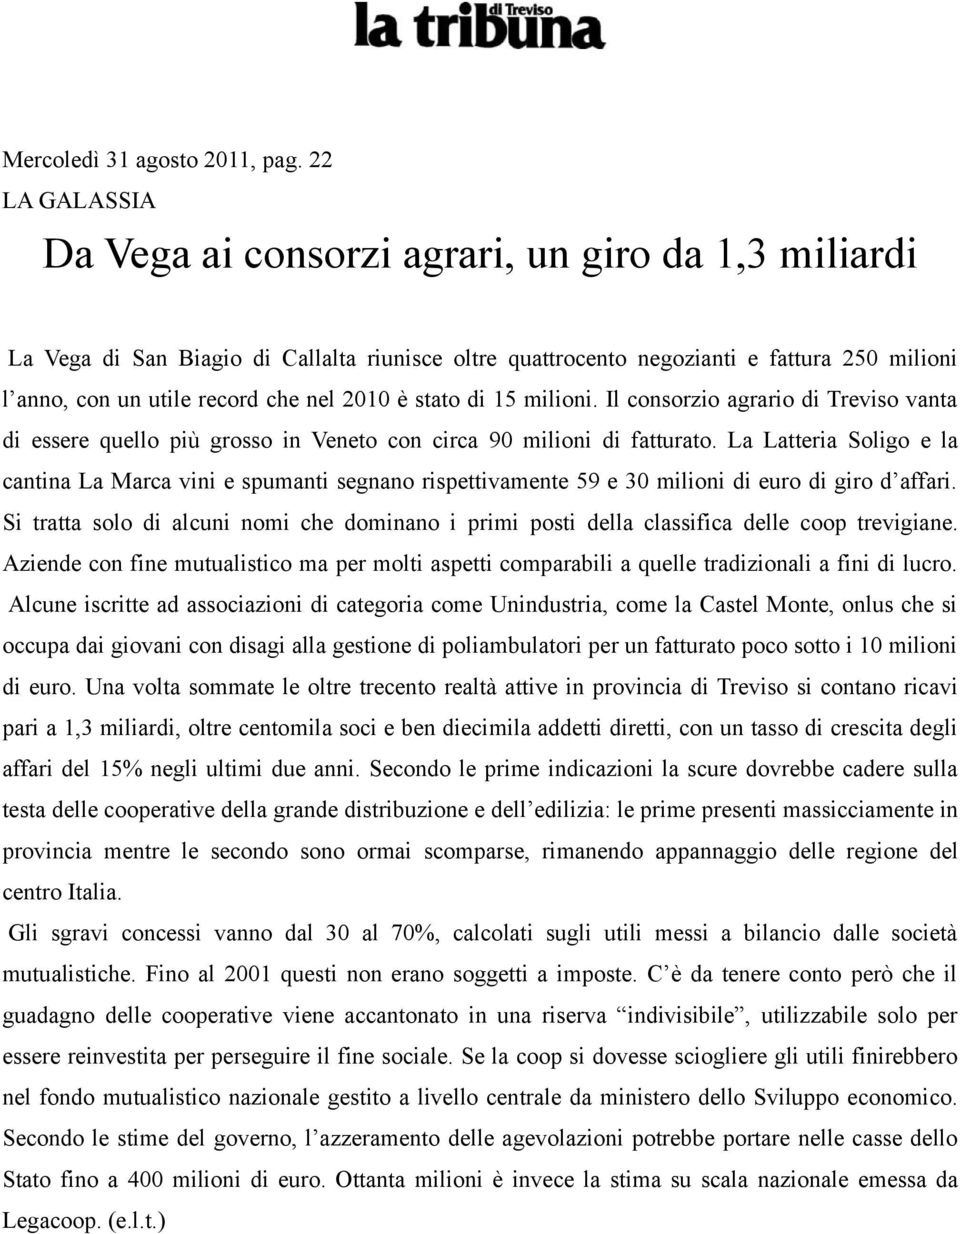 2010 è stato di 15 milioni. Il consorzio agrario di Treviso vanta di essere quello più grosso in Veneto con circa 90 milioni di fatturato.